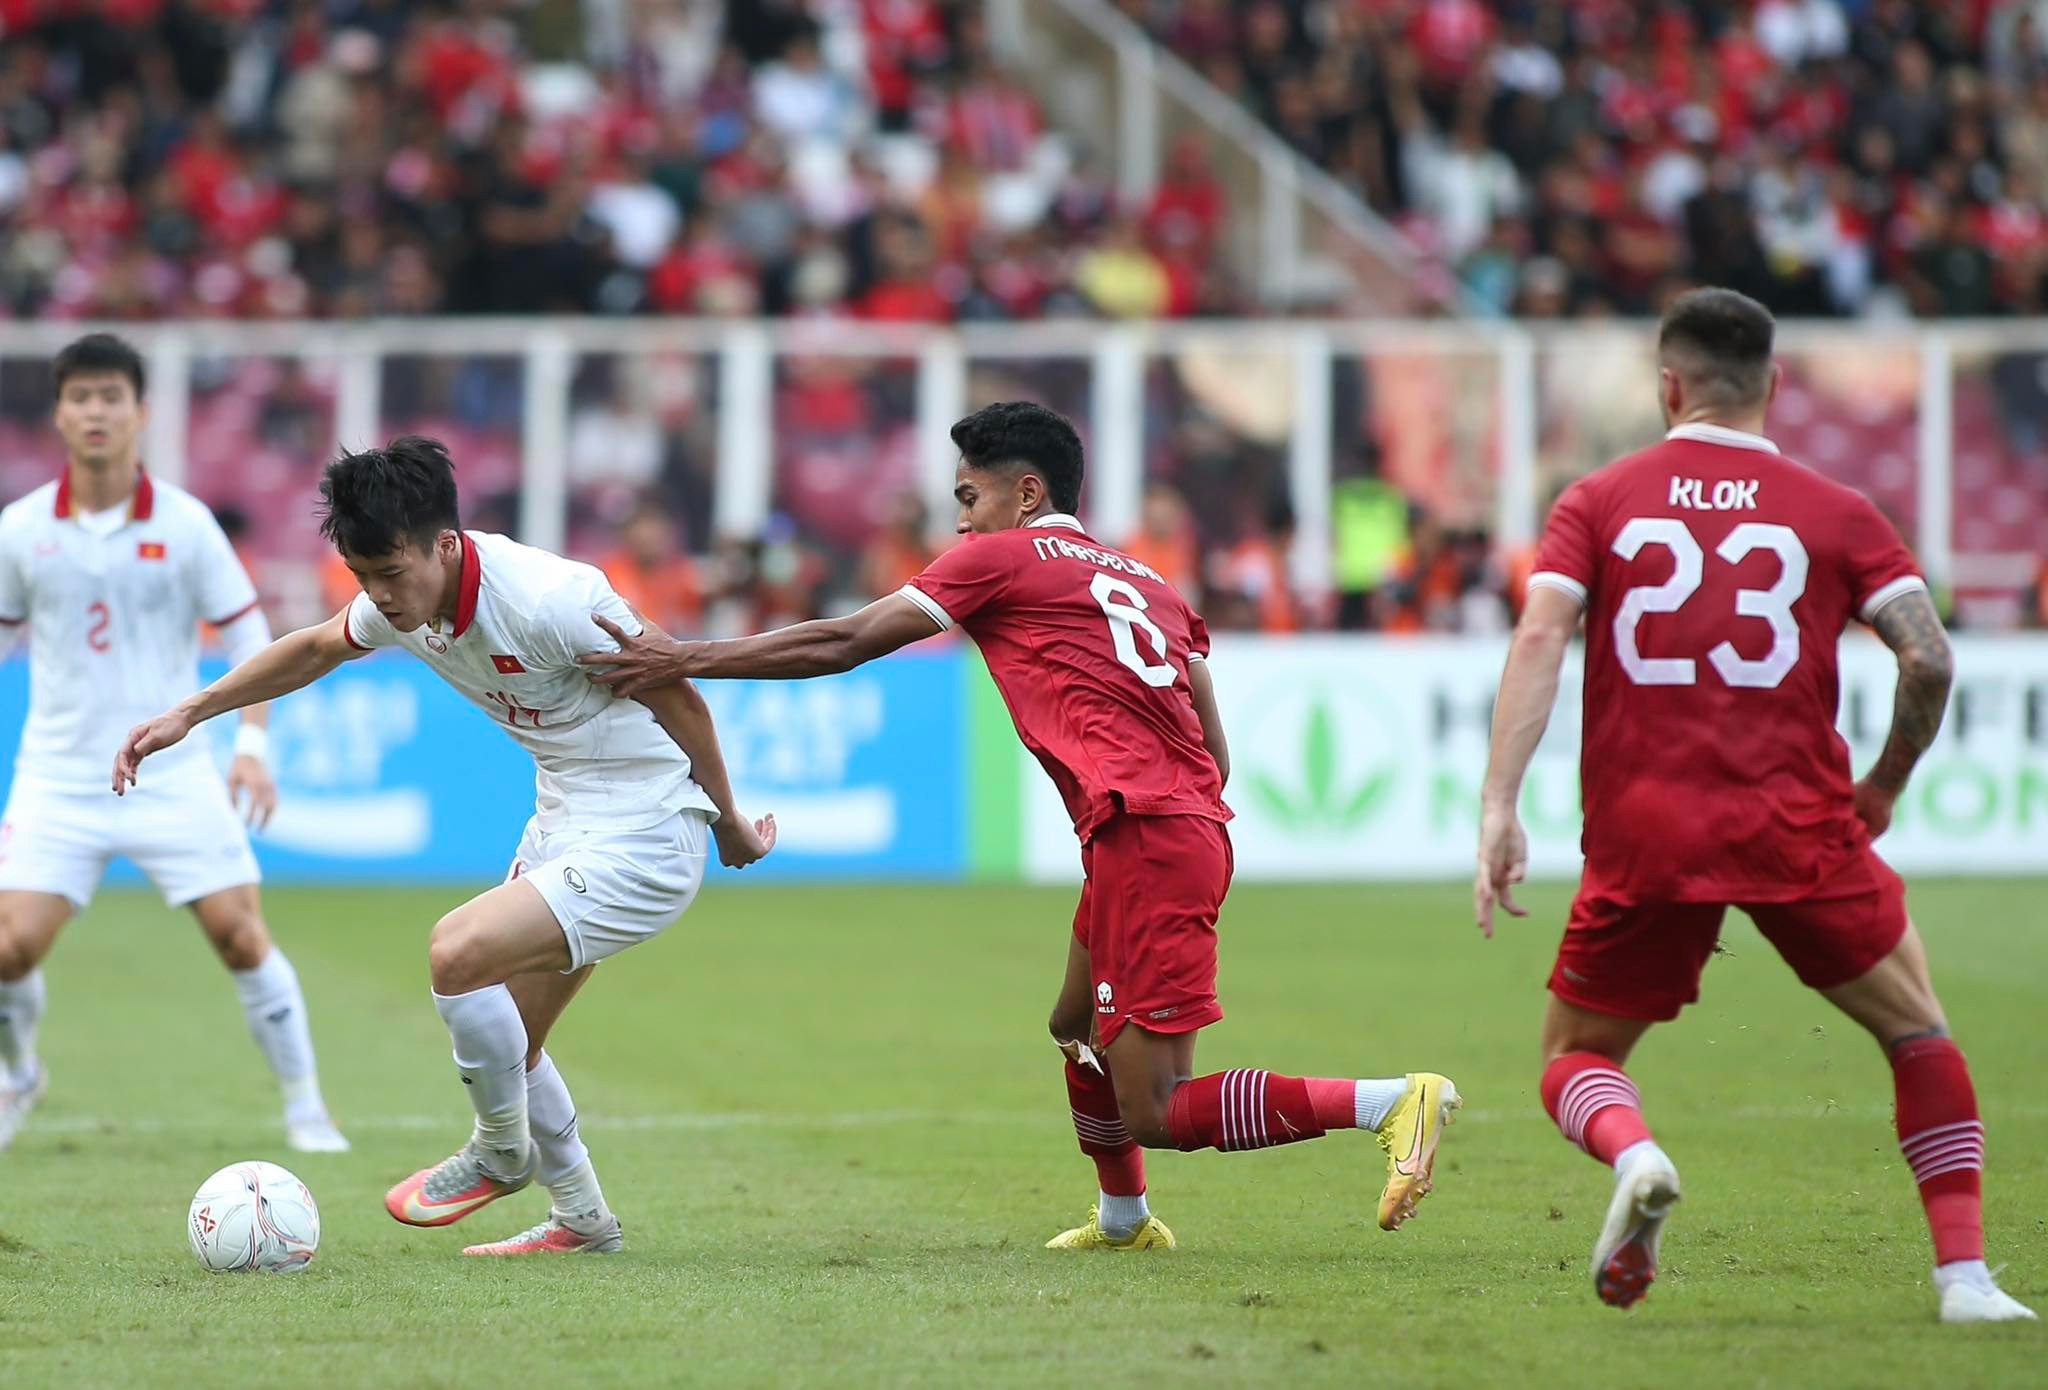 Hoà Indonesia 0-0, tuyển Việt Nam bất lợi lượt về bán kết AFF Cup - Bóng Đá